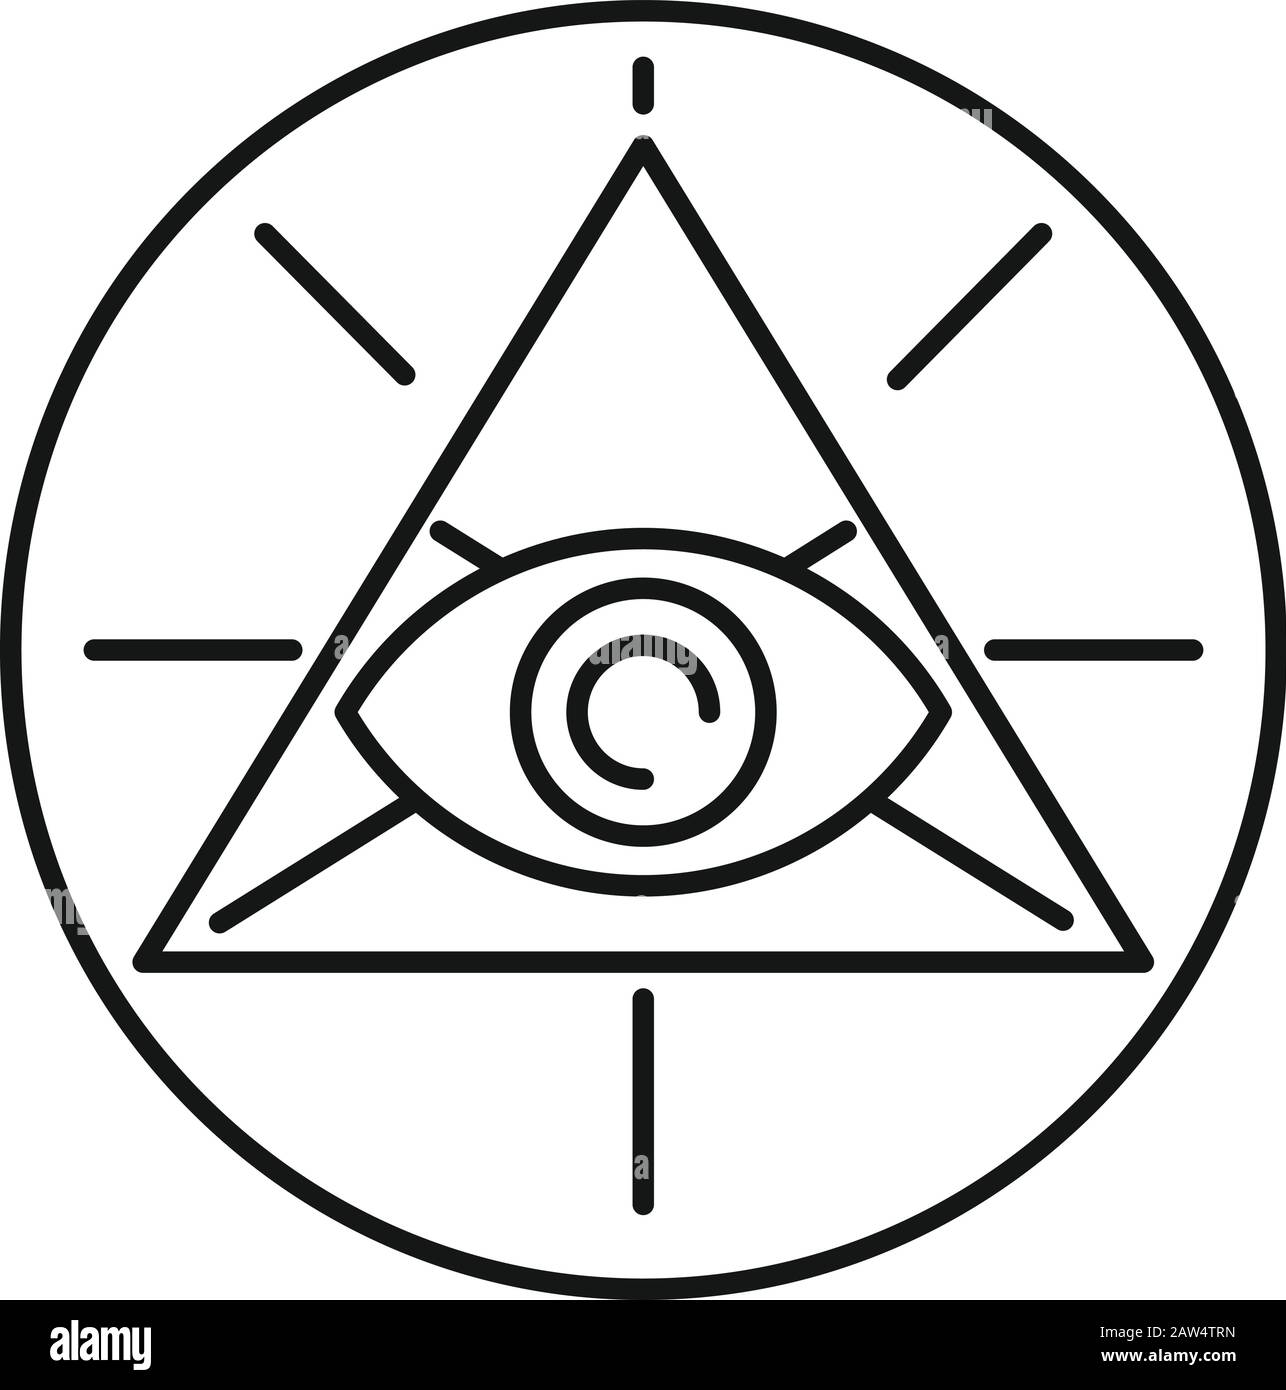 Icône de la pyramide occulte. Contour de la pyramide occulte icône de vecteur d'oeil pour la conception de Web isolé sur fond blanc Illustration de Vecteur